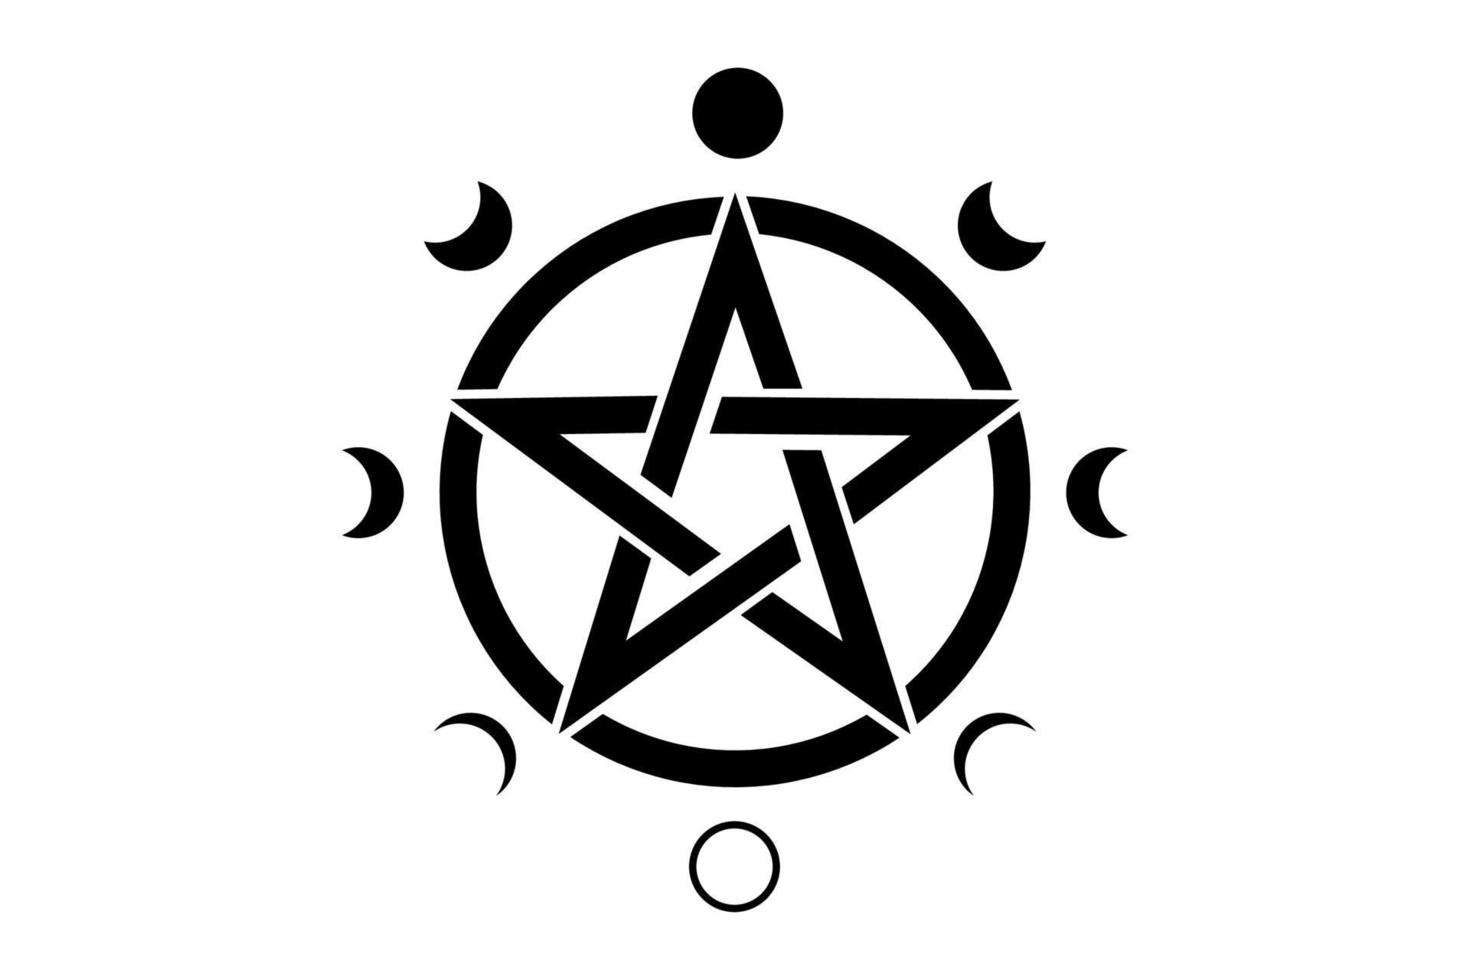 símbolo del círculo del pentáculo y fases de la luna. símbolo wiccano vector